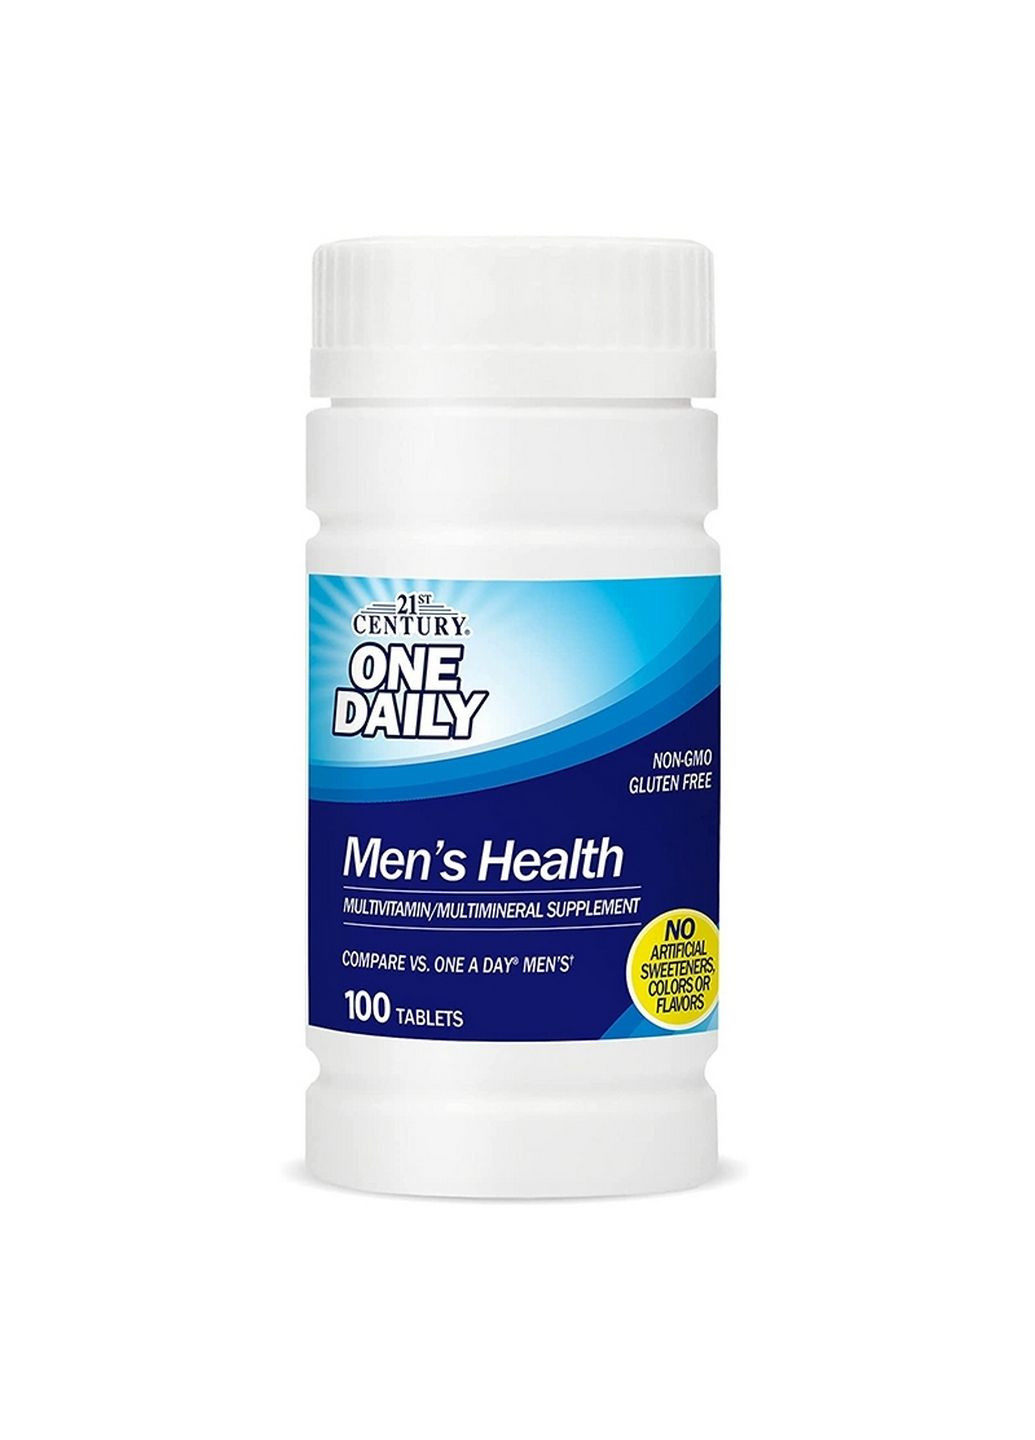 Вітаміни та мінерали One Daily Men's Health, 100 таблеток 21st Century (294926031)